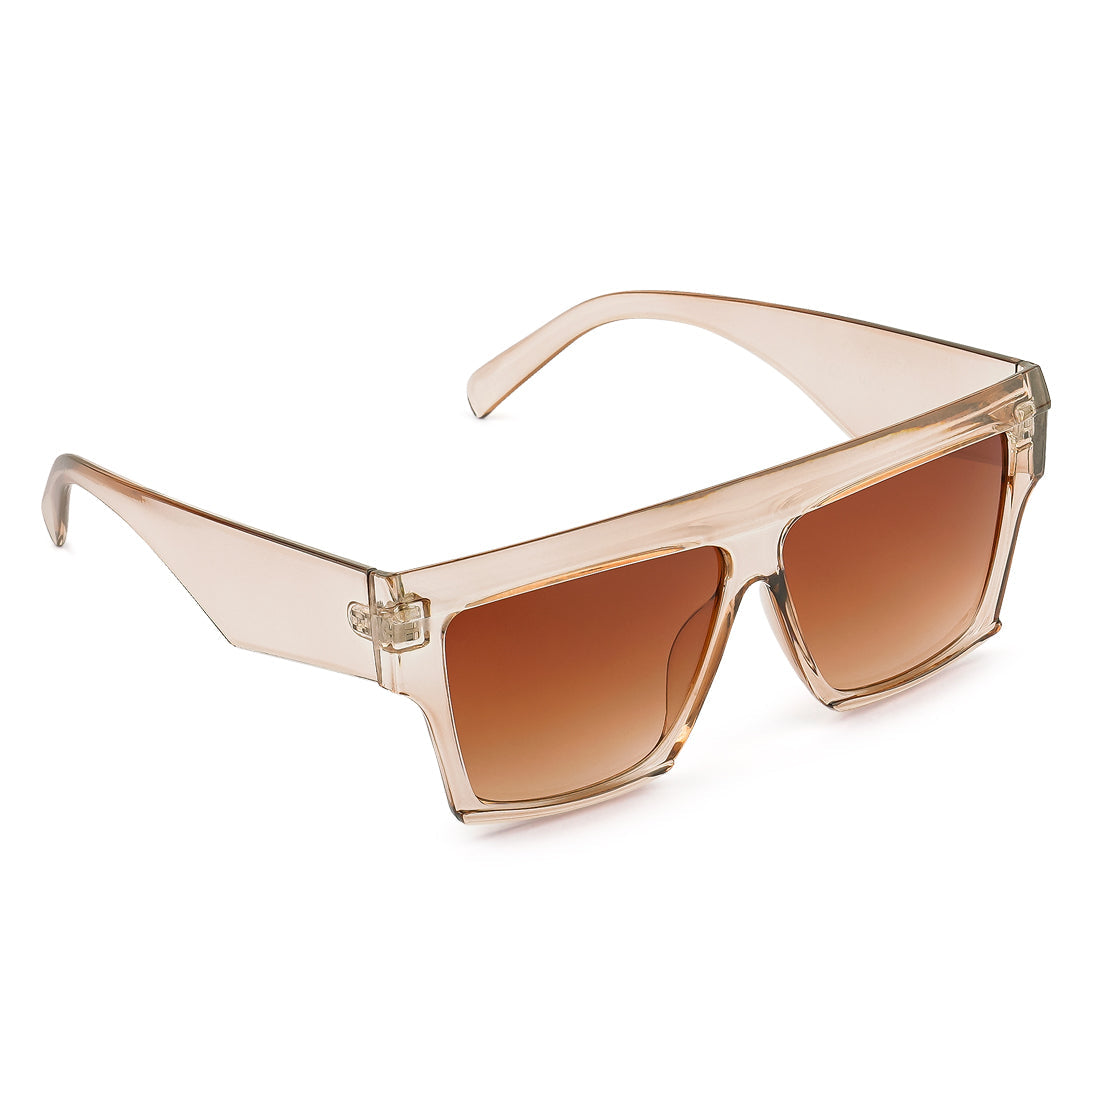 Broad Temple Wayfarer Sunglasses In Brown